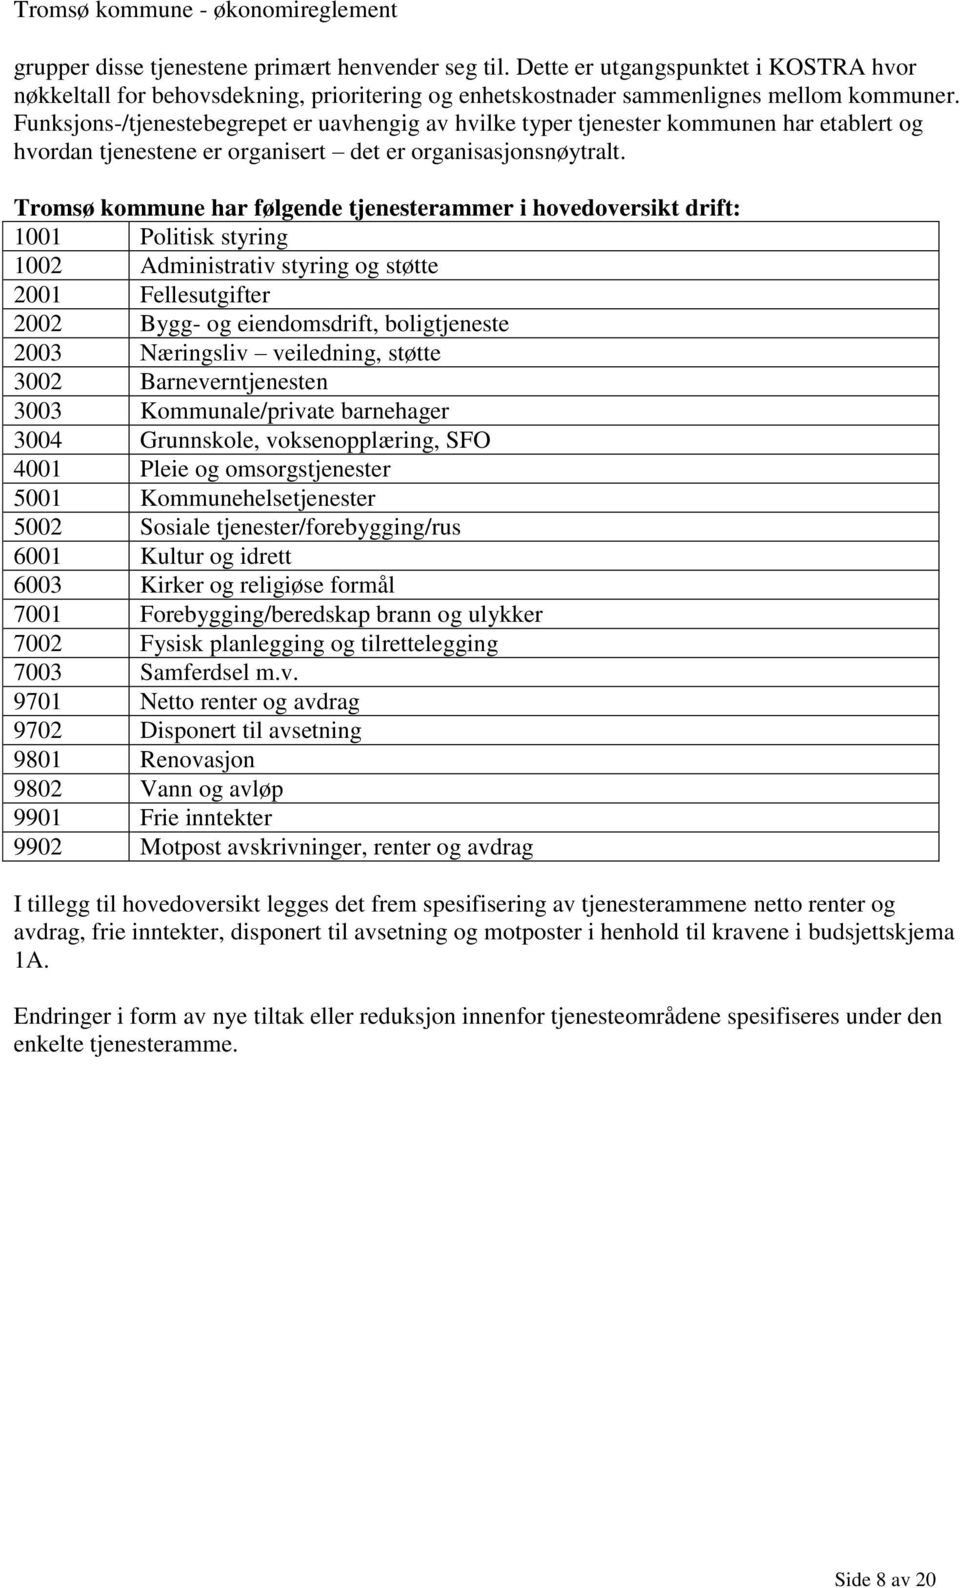 Tromsø kommune har følgende tjenesterammer i hovedoversikt drift: 1001 Politisk styring 1002 Administrativ styring og støtte 2001 Fellesutgifter 2002 Bygg- og eiendomsdrift, boligtjeneste 2003